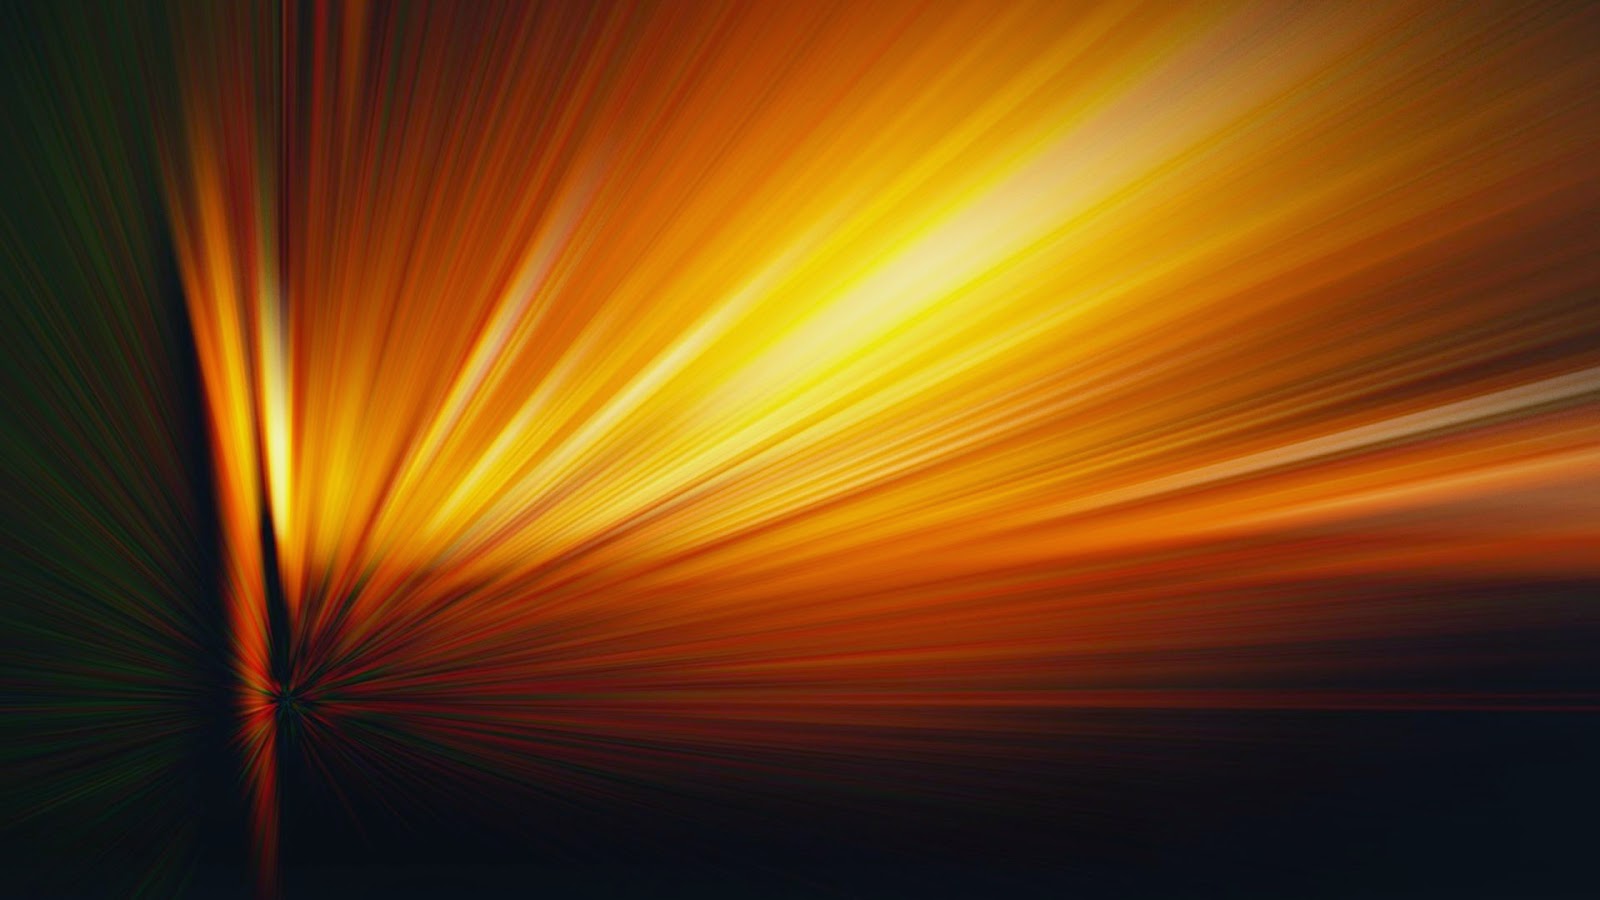 Sun Rays Digital Art Wallpaper - Light , HD Wallpaper & Backgrounds